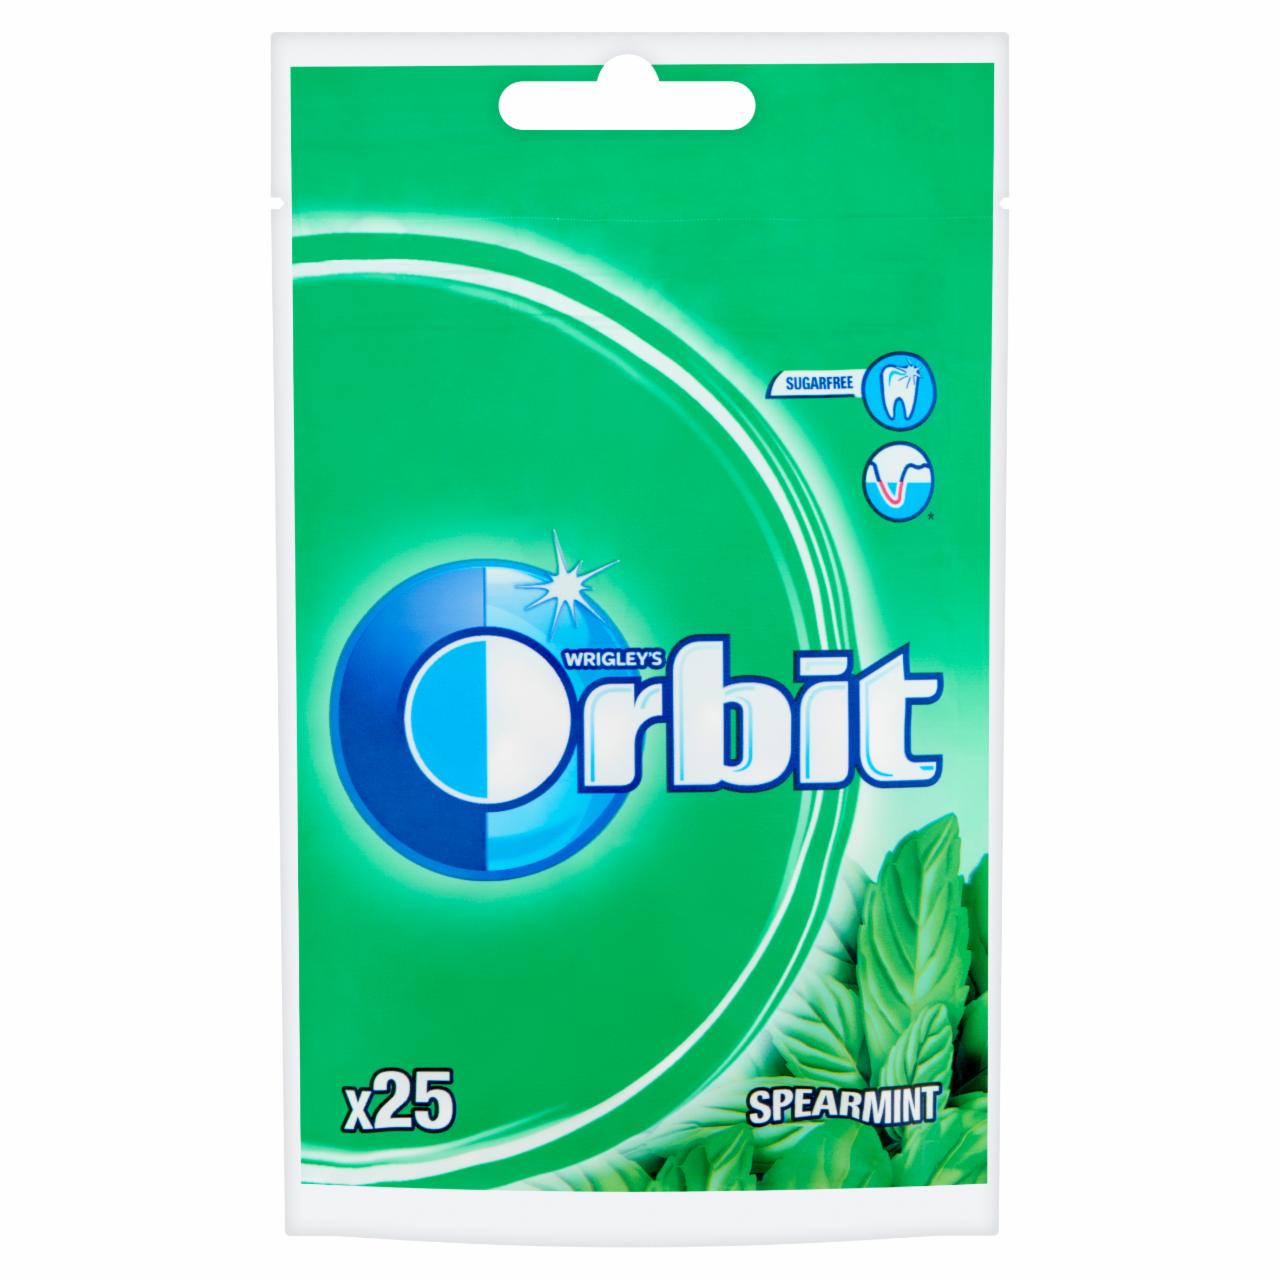 Képek - Orbit Spearmint mentaízű cukormentes rágógumi édesítőszerrel 35 g